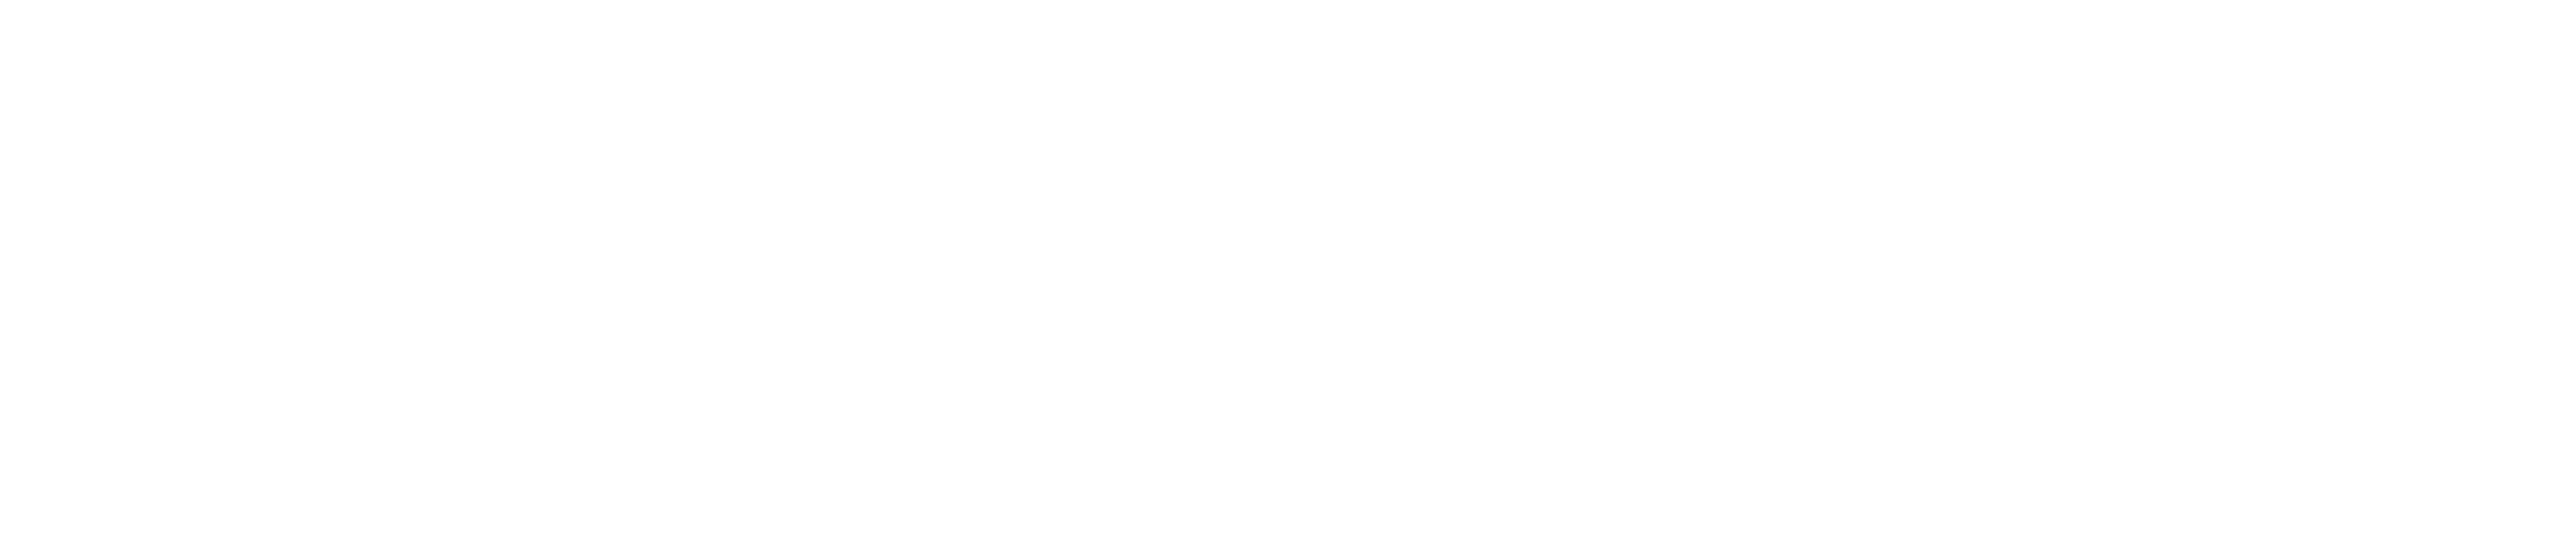 System Shock 2 Logo Free PNG